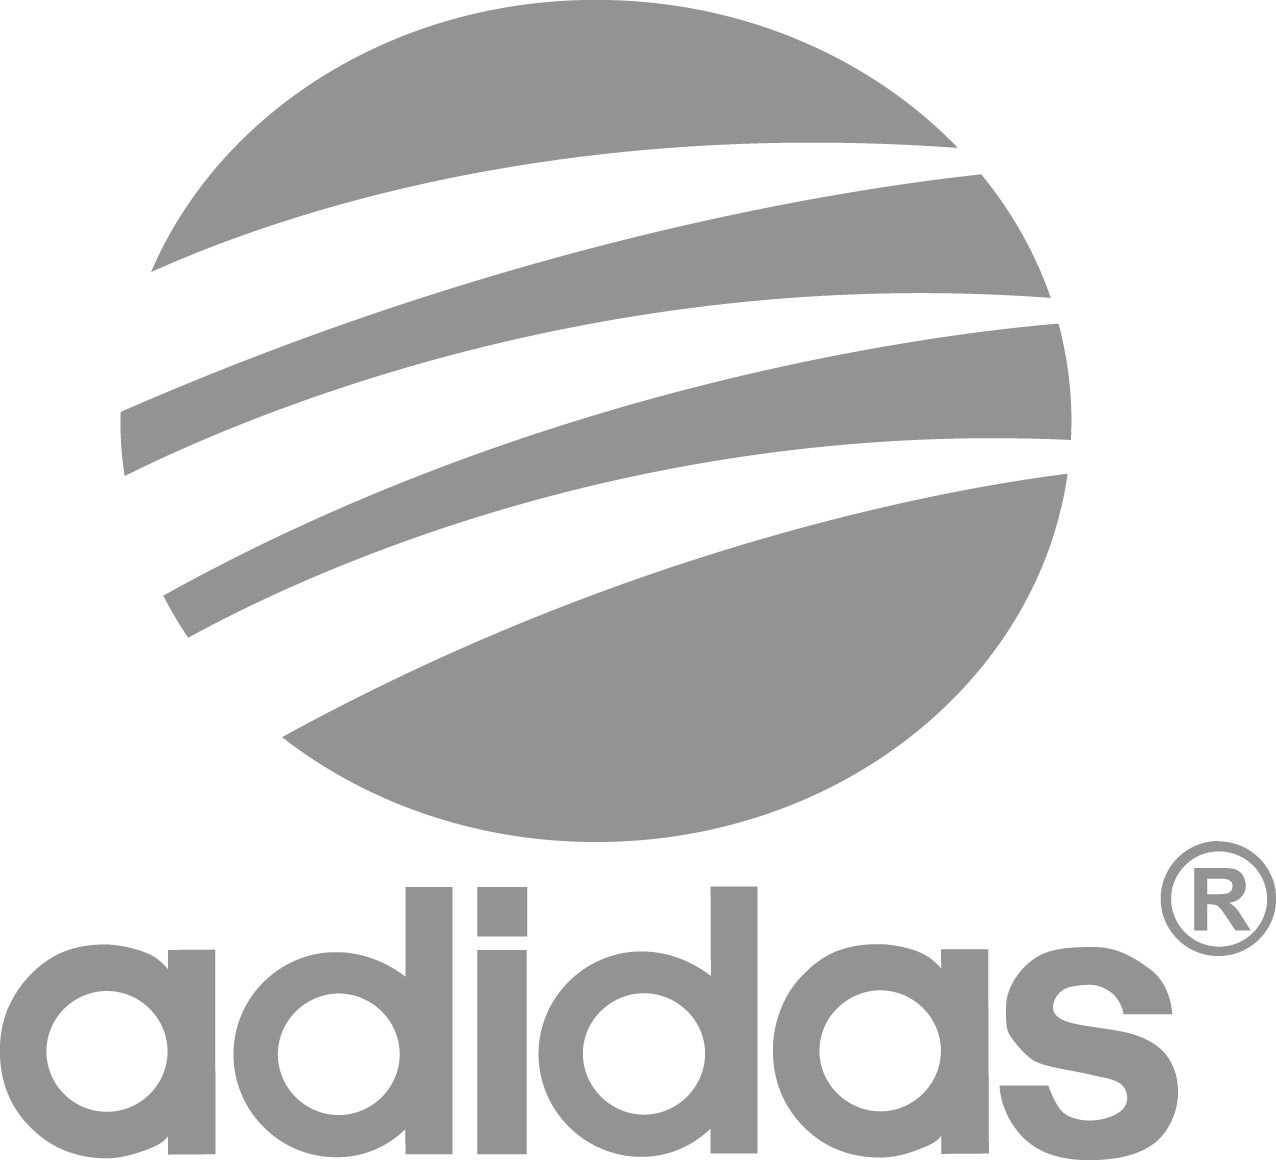 Adidas アディダス ロゴマーク Logomark Mania 世界のかわいいロゴマーク集 企業ロゴ ブランドロゴ